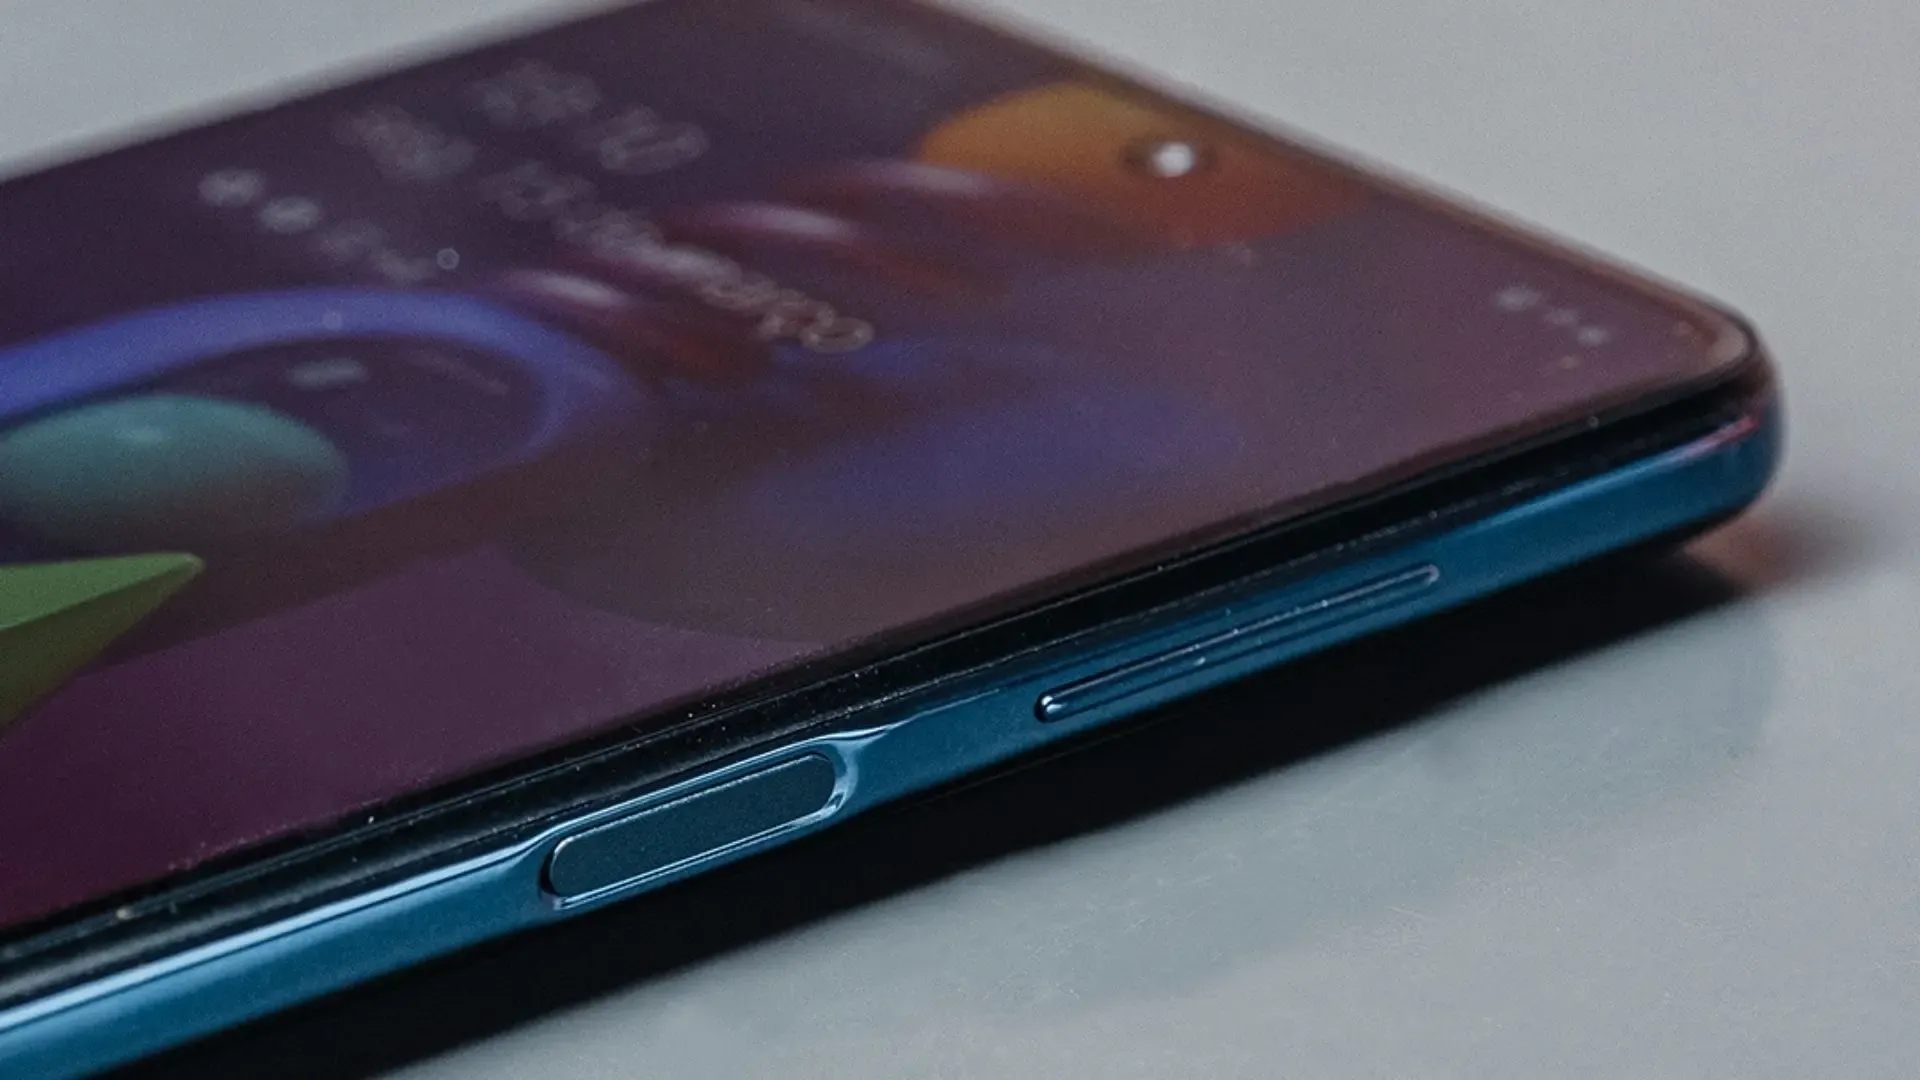 Lateral azul do celular com botões de volume, bloqueio e a tela acesa